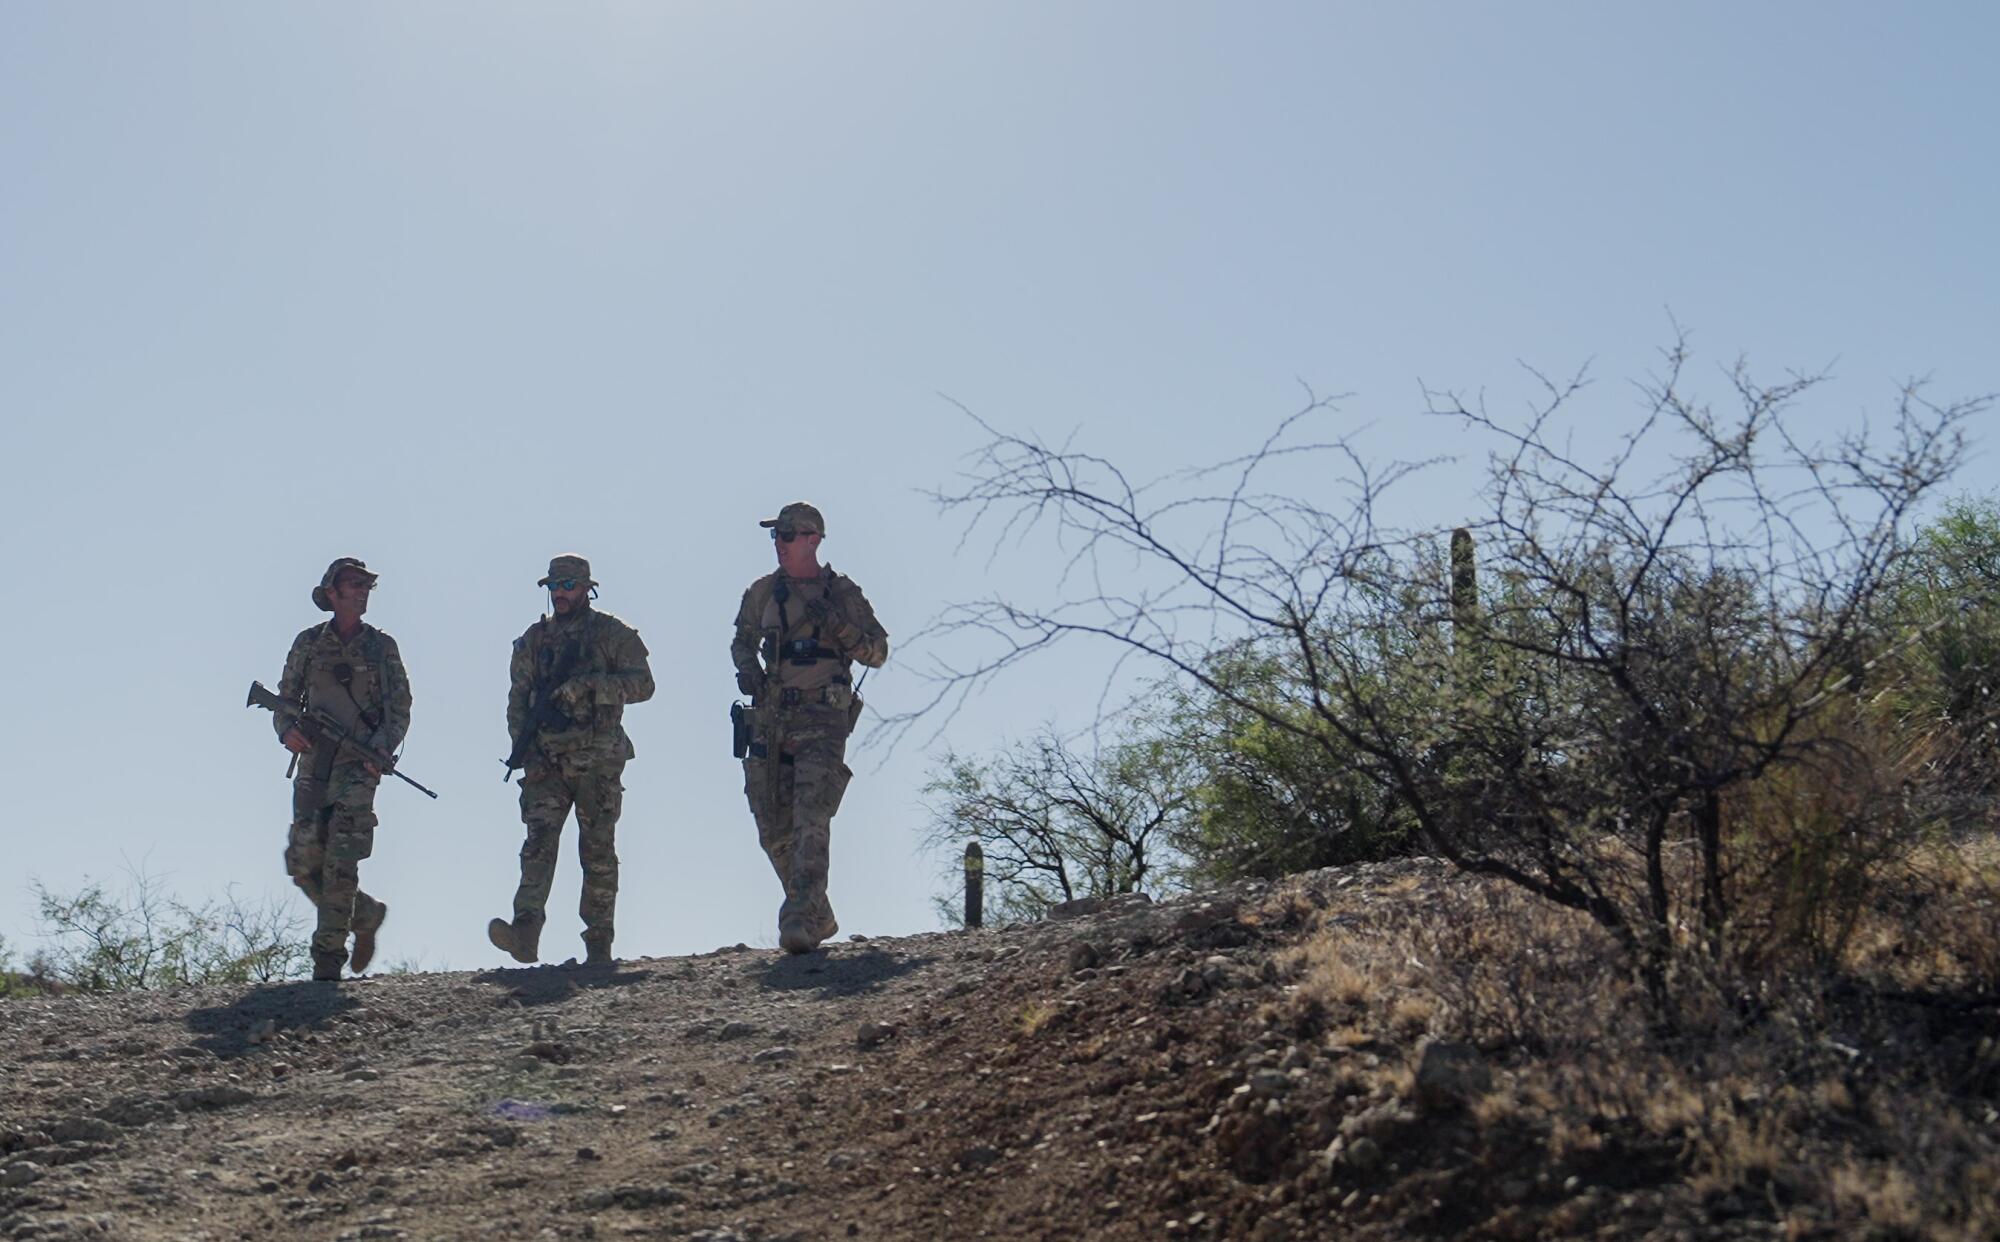 Three men walk in the desert near the U.S.-Mexico border